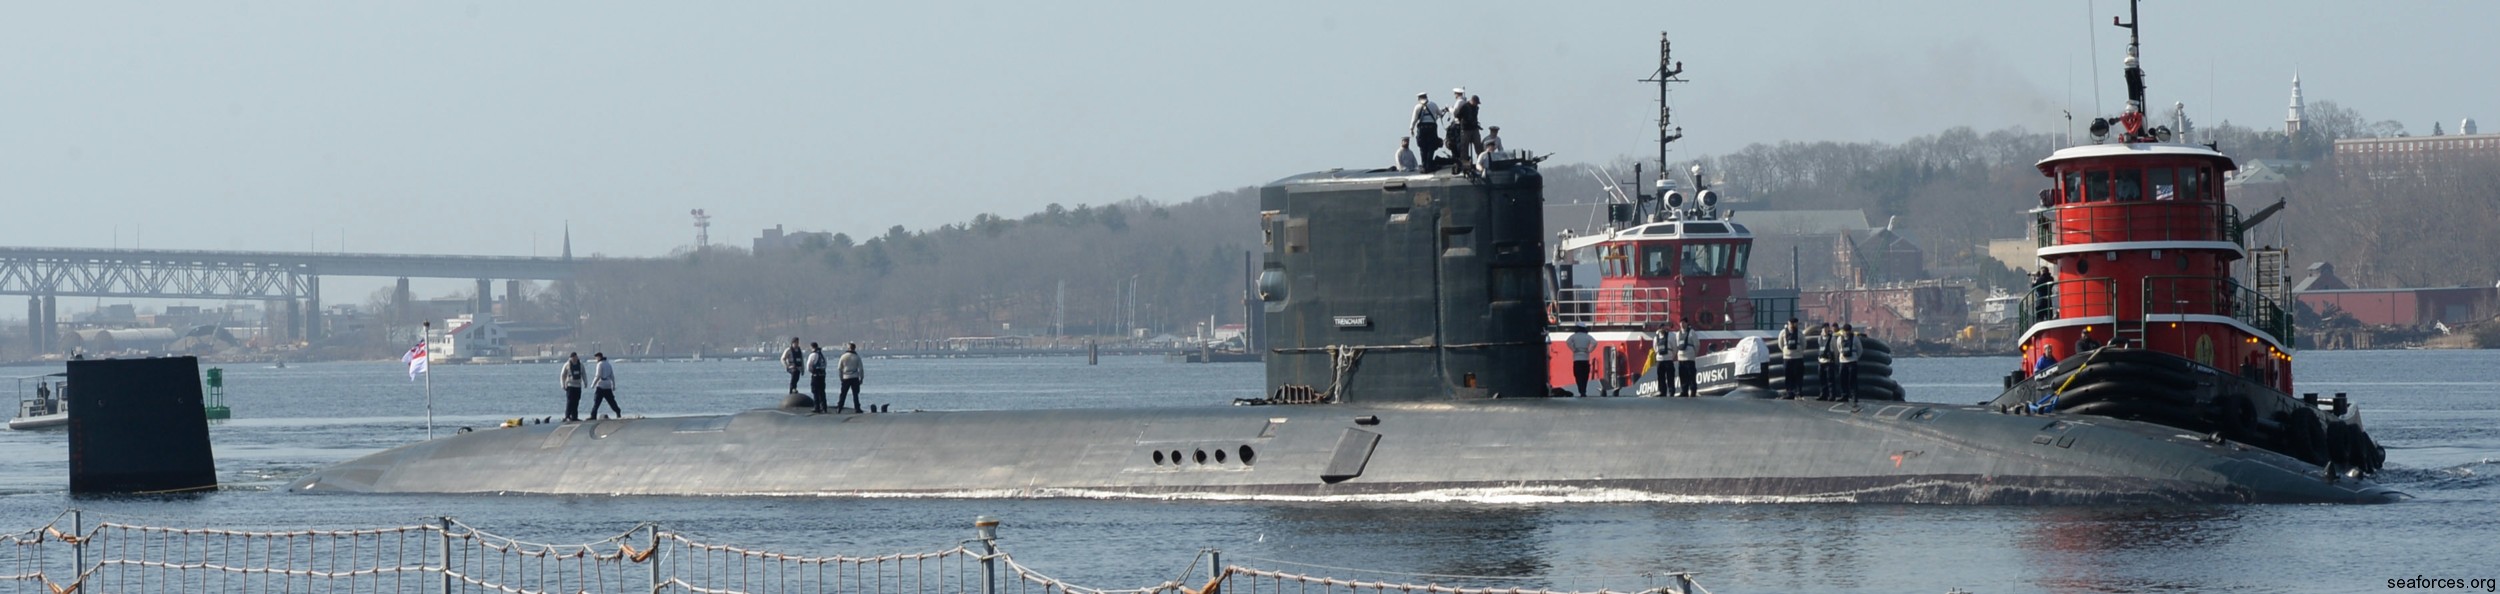 hms trenchant s-91 trafalgar class attack submarine royal navy 11 subase new london groton